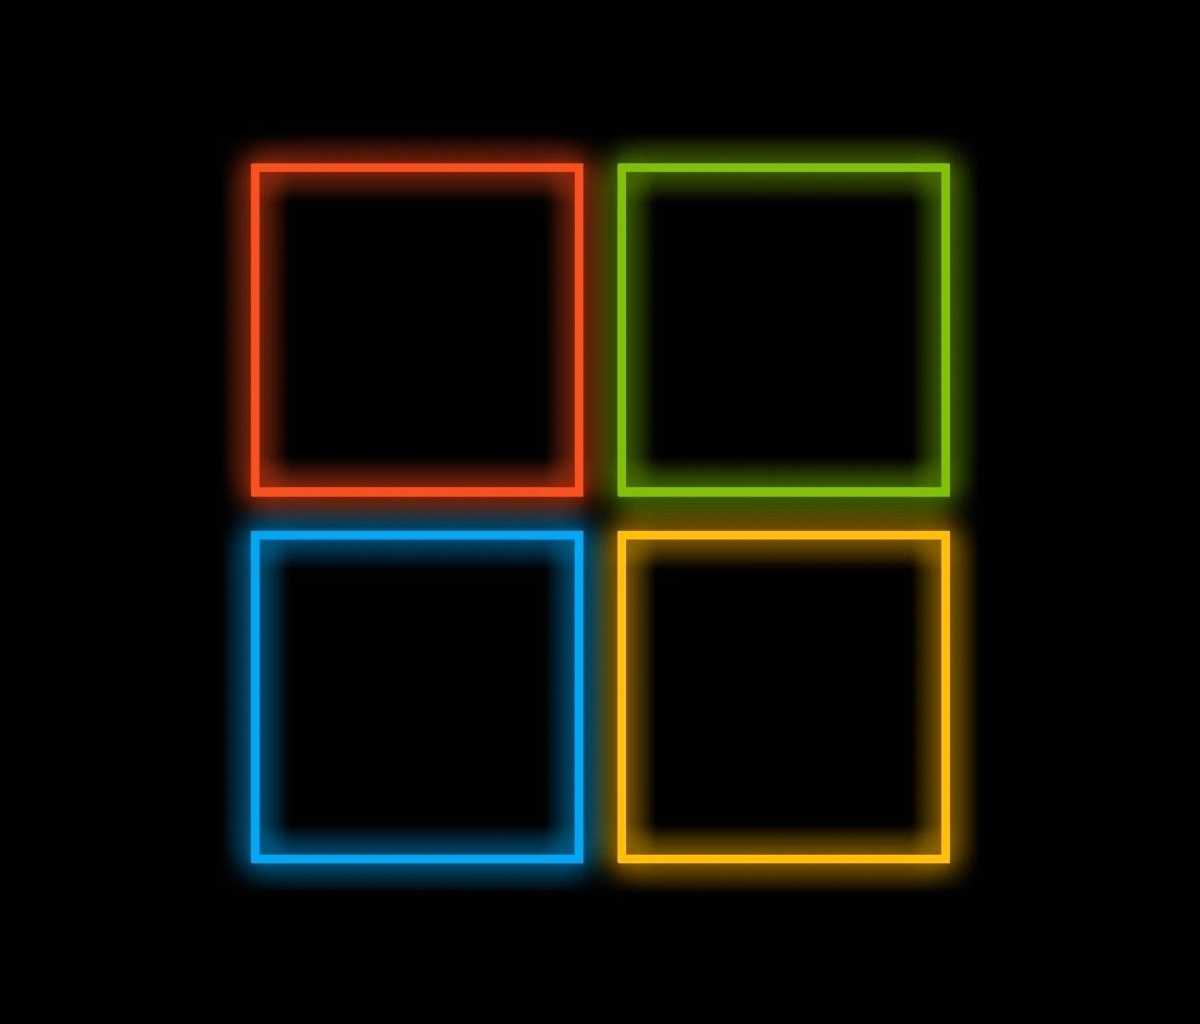 Das OS Windows 10 Neon Wallpaper 1200x1024